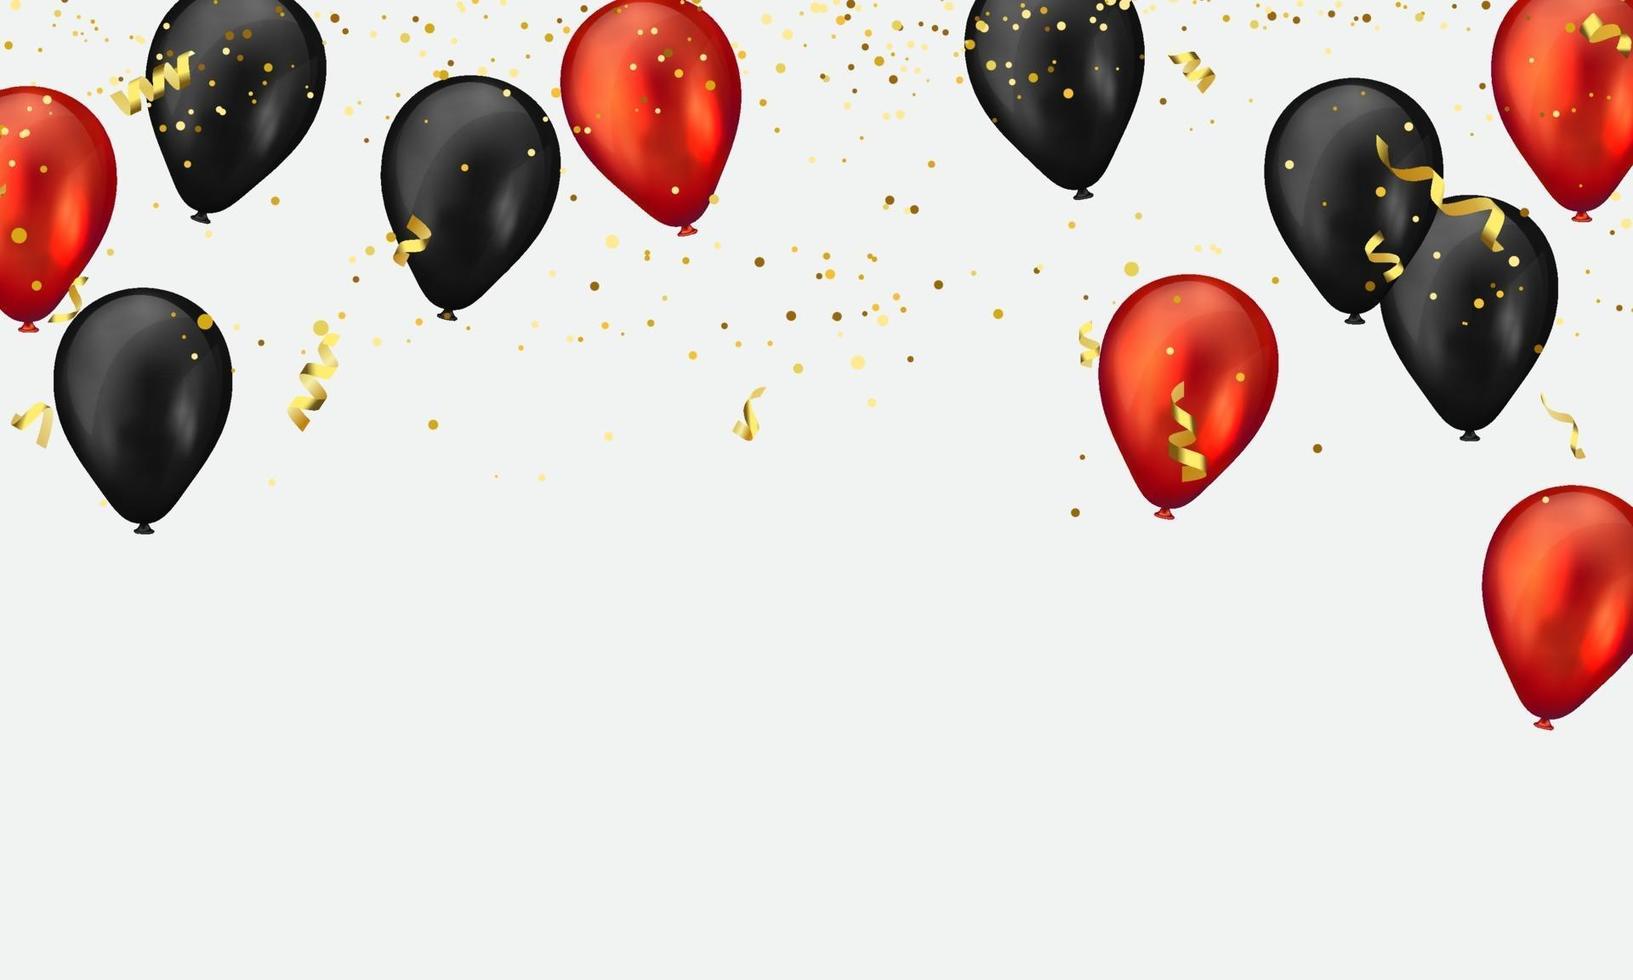 ballons rouges et noirs confettis or scintillent pour l'affiche d'événement et de vacances. illustration vectorielle de fond célébration. vecteur